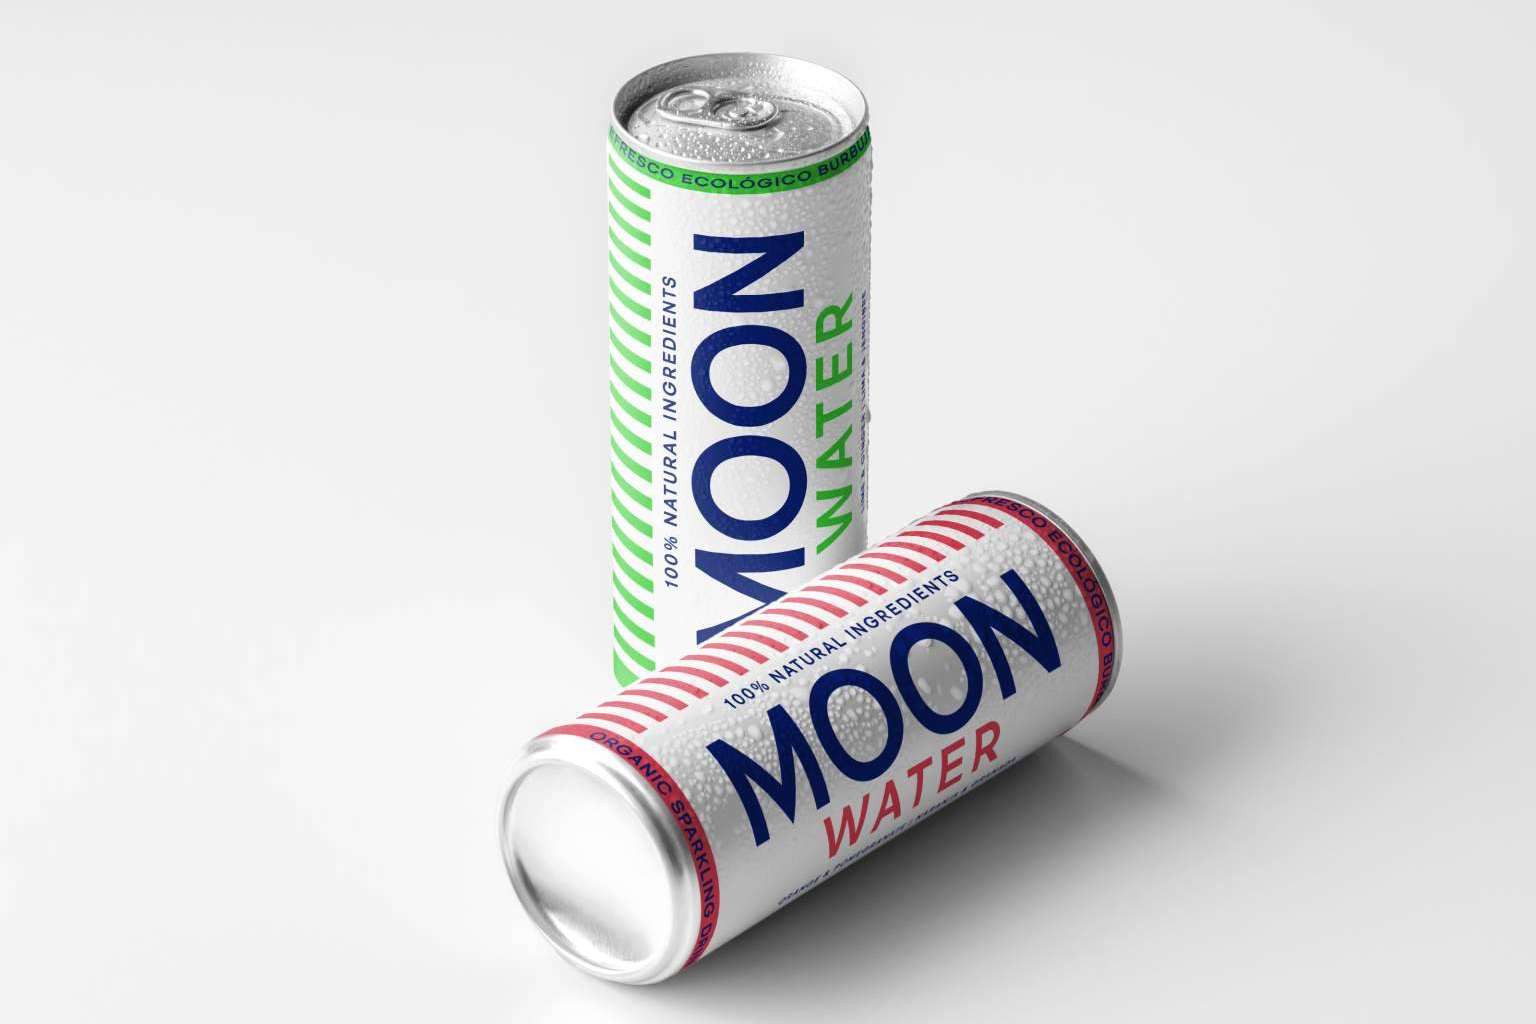 MoonWater ha disminuido el tamaño de su formato en lata para mejorar la calidad de vida del planeta y sus habitantes